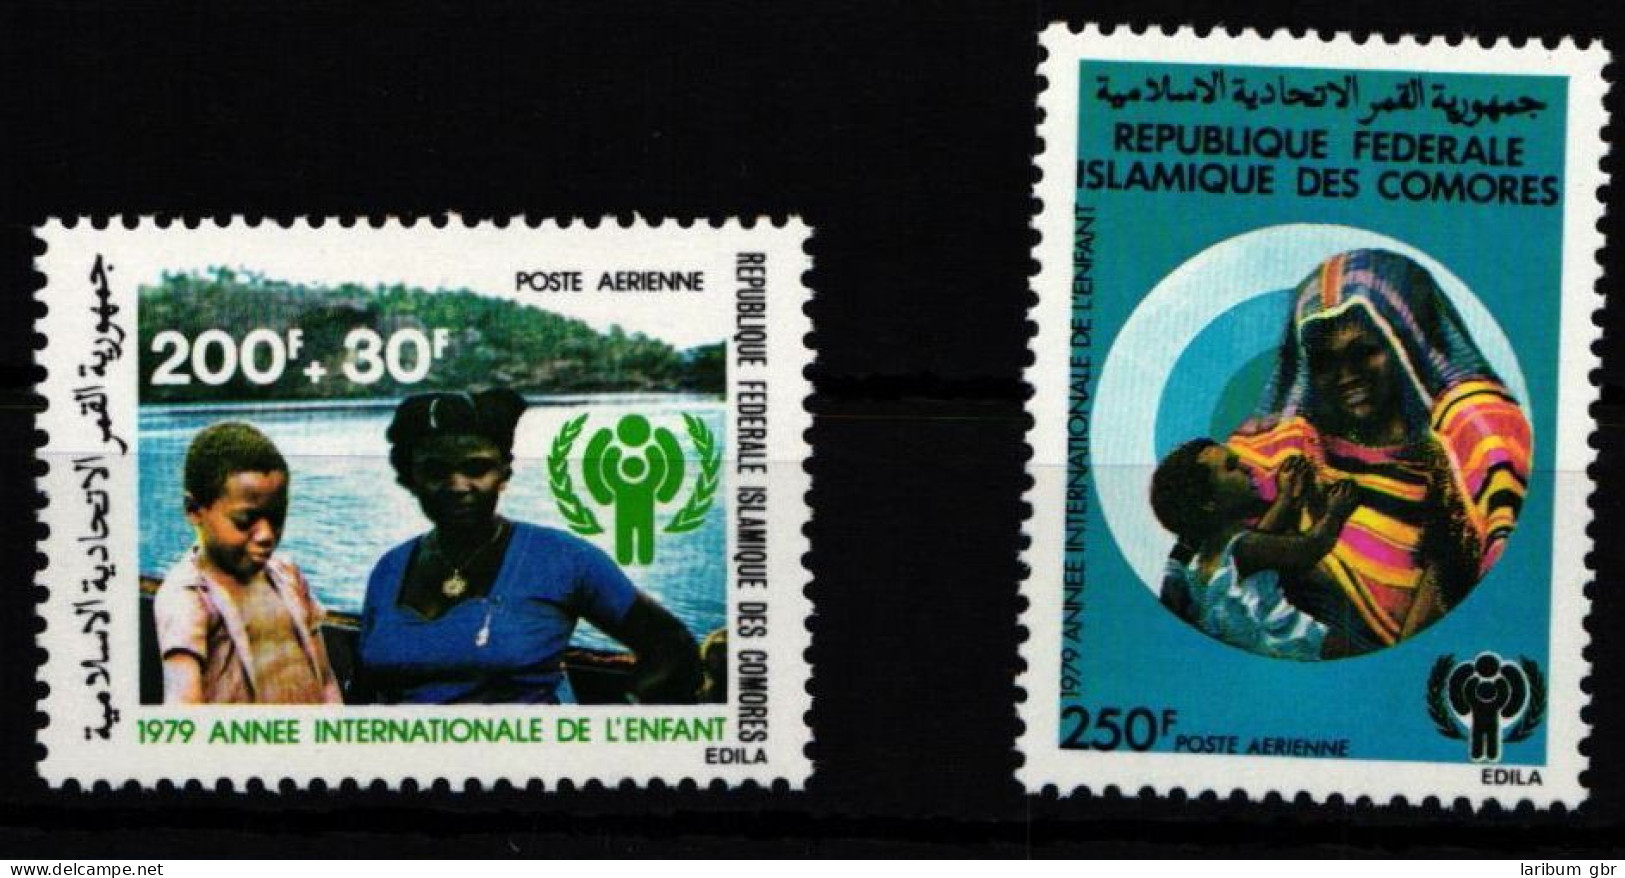 Komoren 566A-567A Postfrisch Jahr Des KIndes #HD540 - Comores (1975-...)